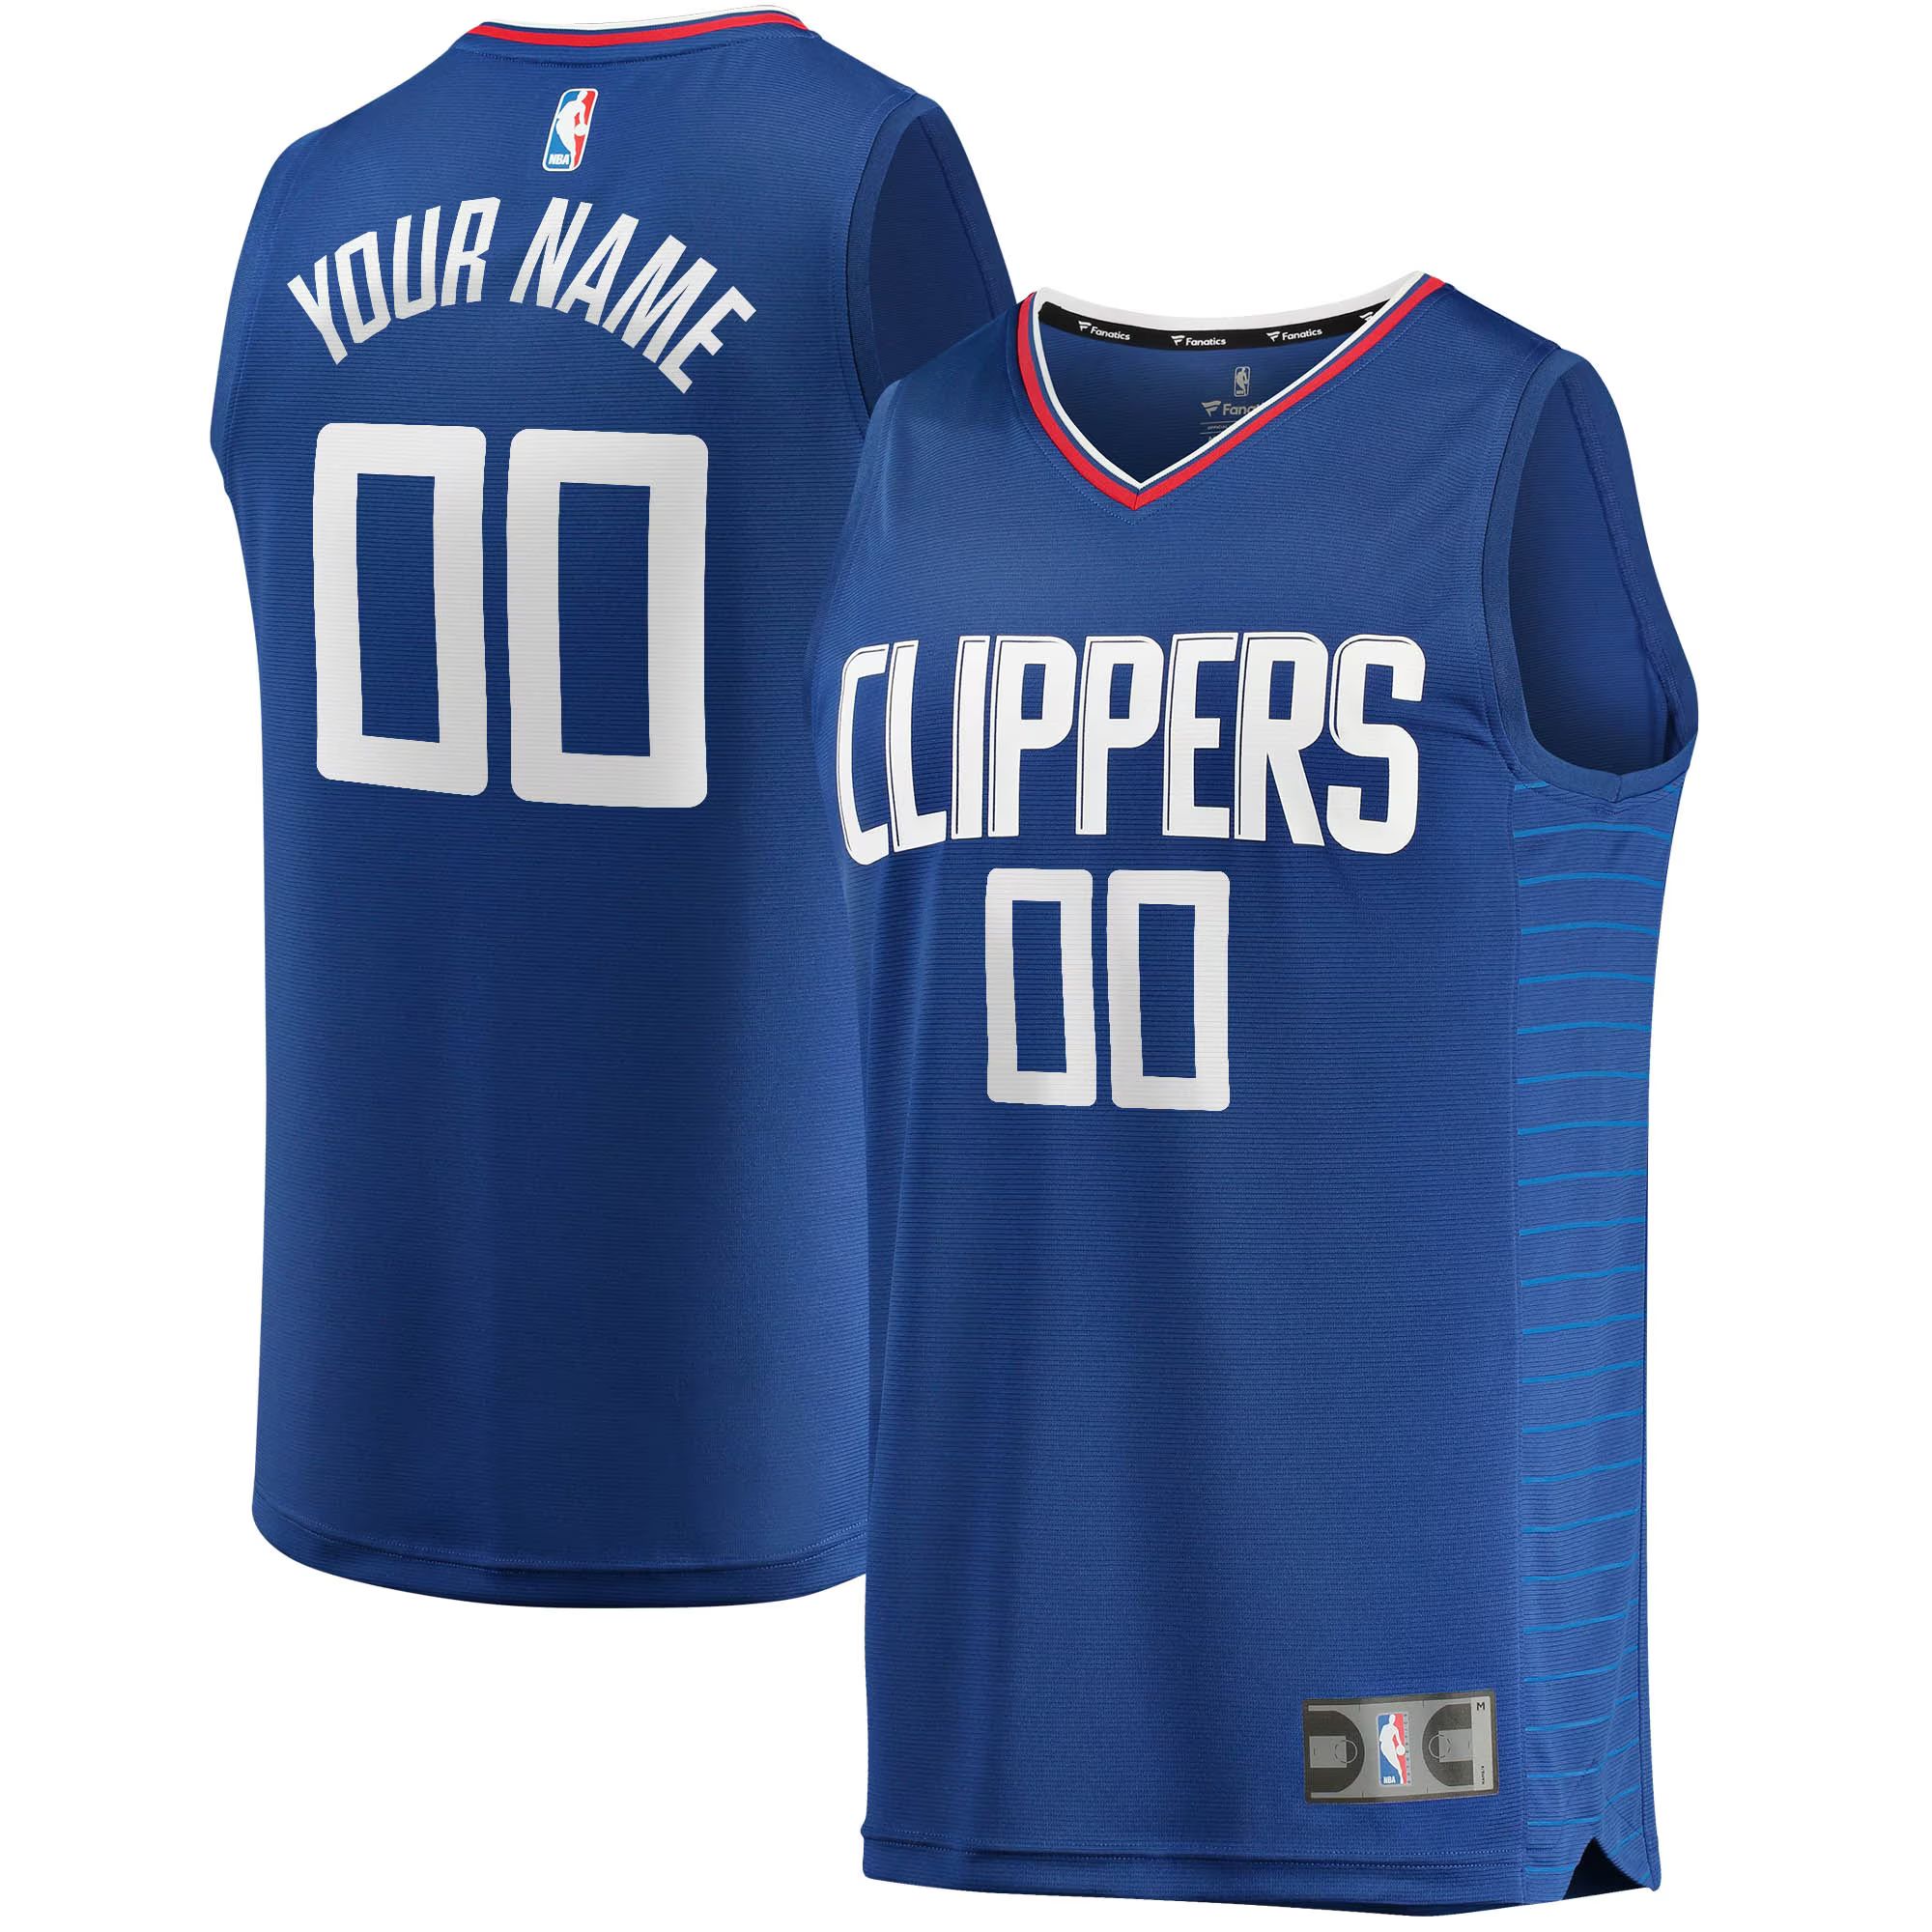 Youth LA Clippers Fanatics Branded Royal Fast Break Custom Replica Jersey - Icon Edition | NBA store